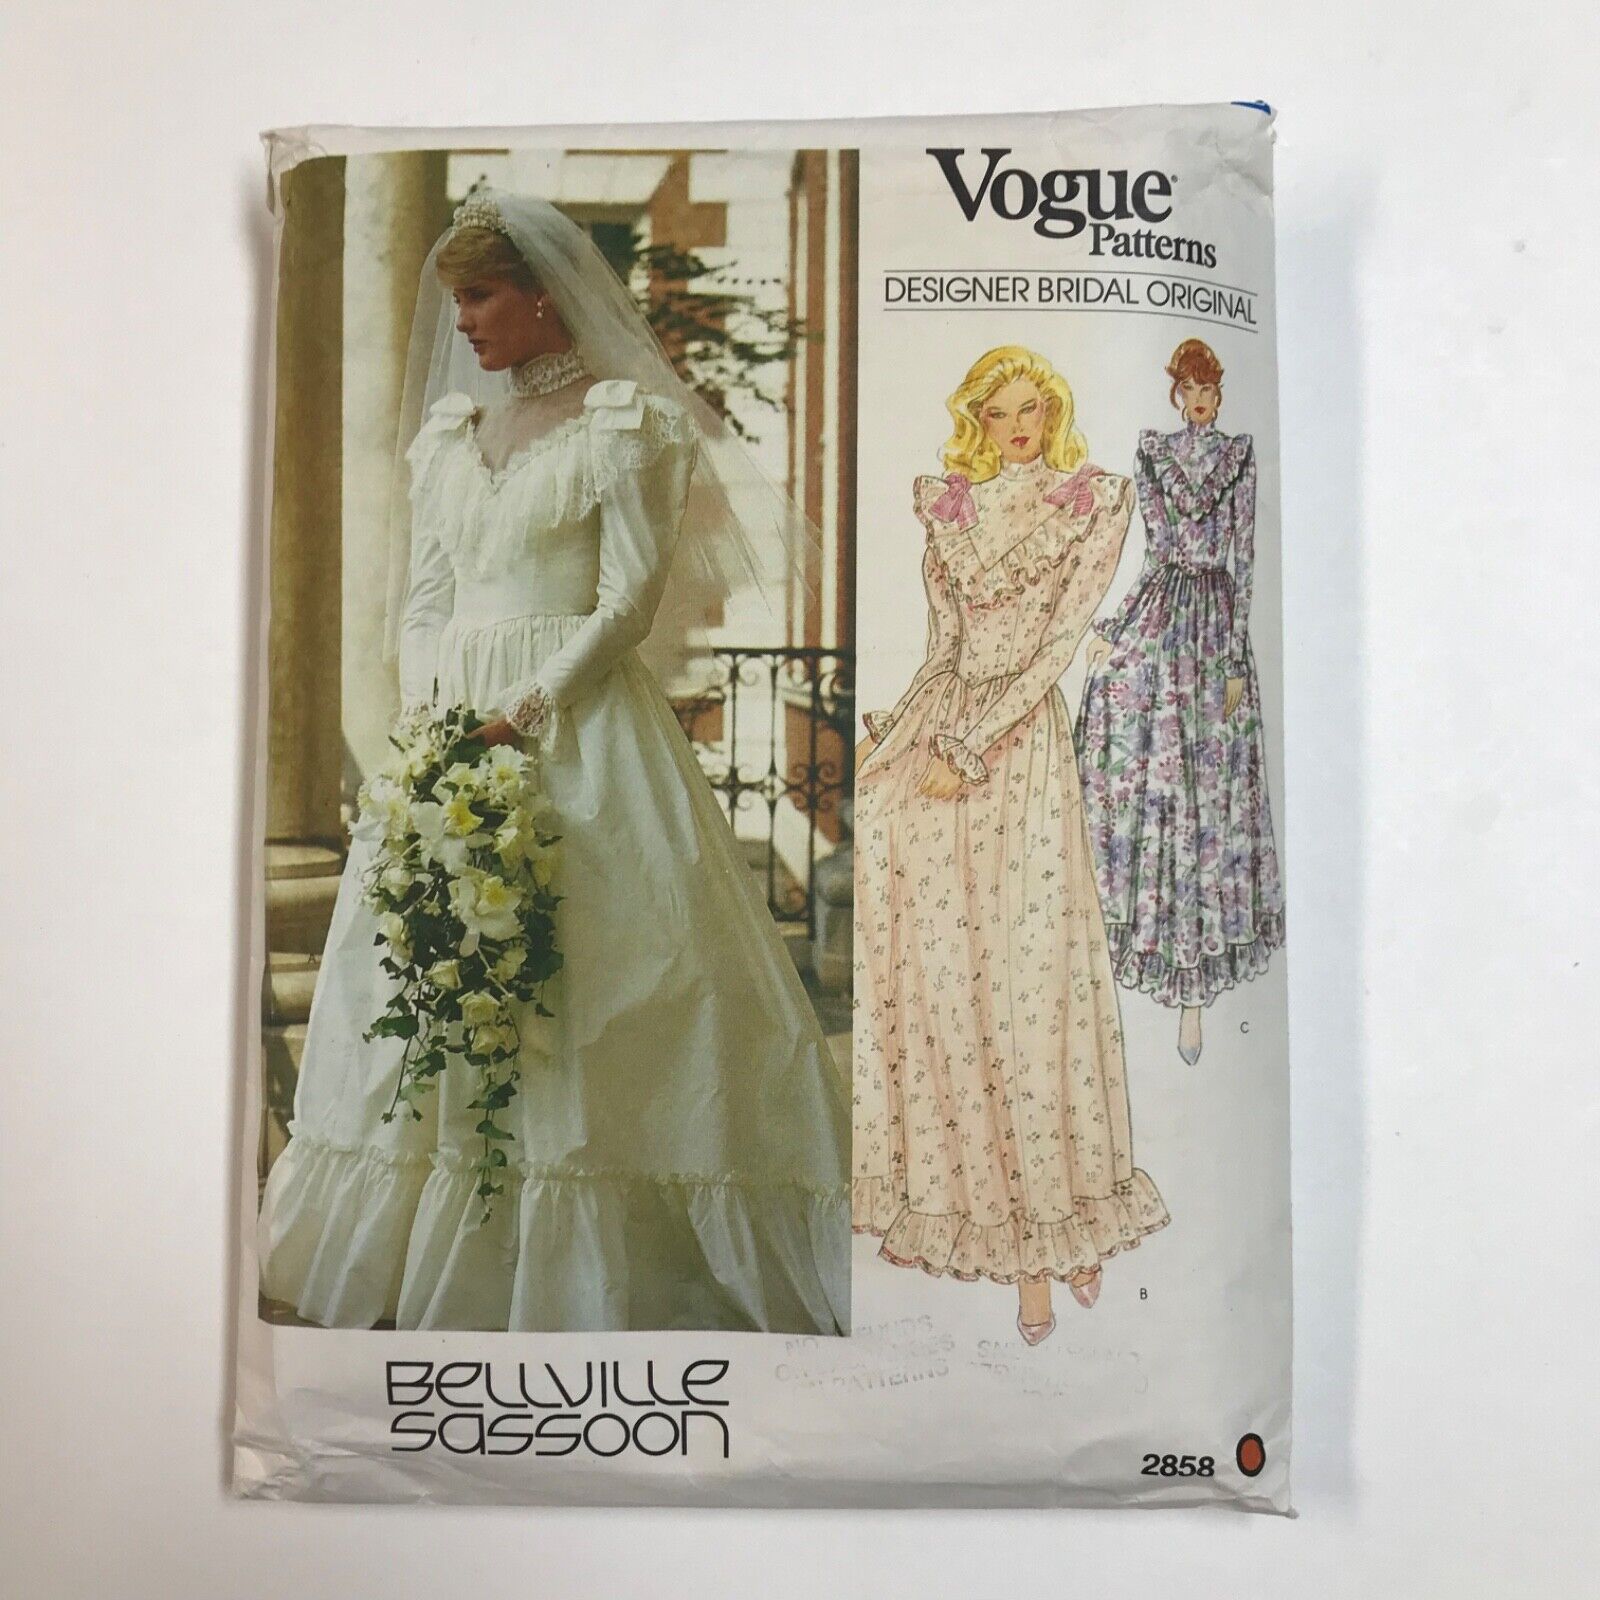 Vogue Designer Bridal Bellville Sassoon Dress Vtg Sewing Pattern 2858 Cut Size 6